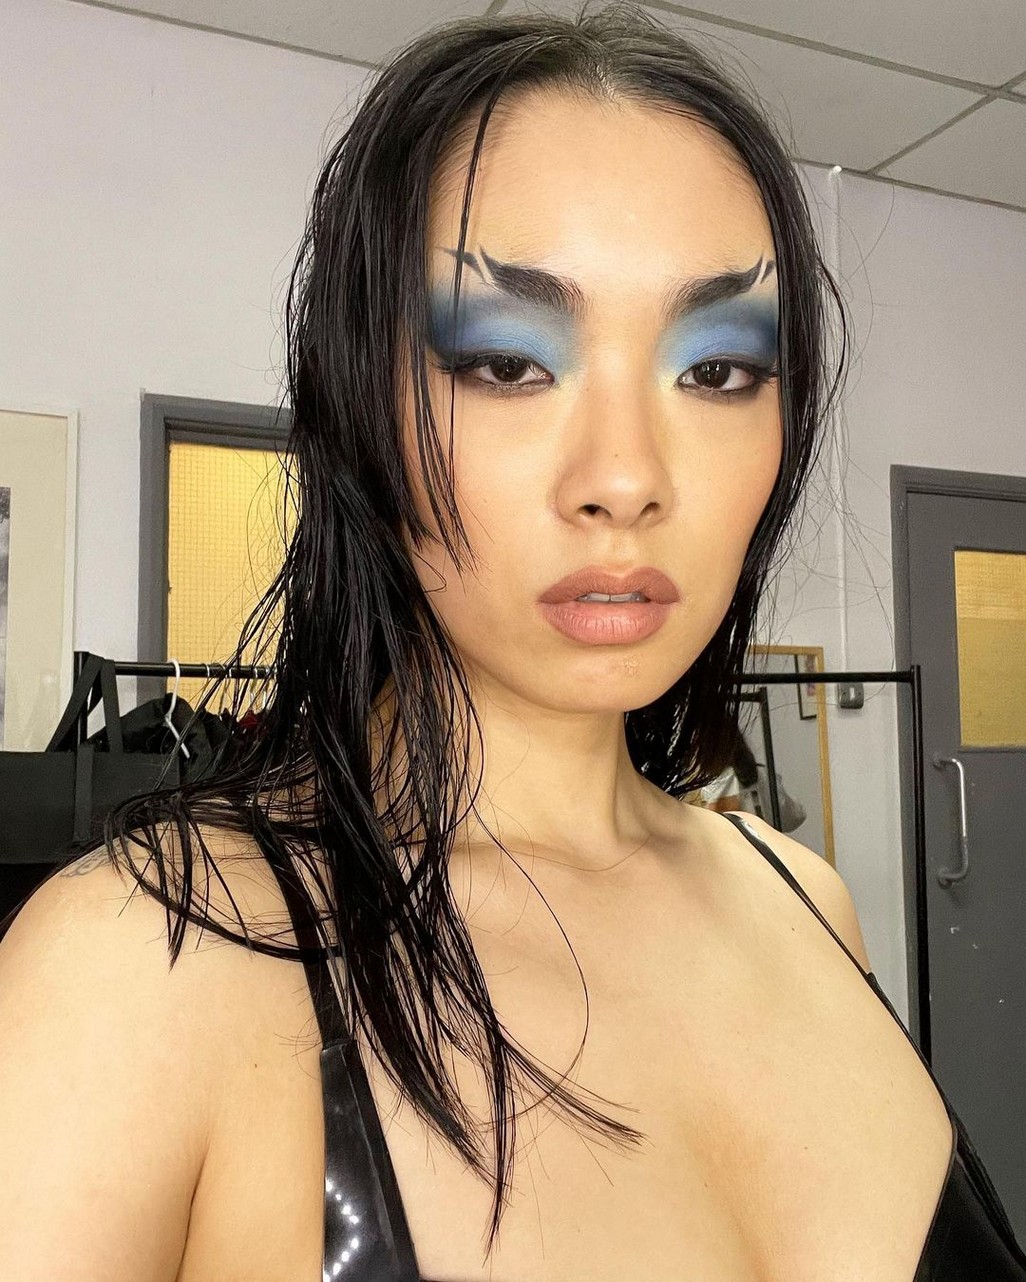 Hot Selfie Of Rina Sawayama TheFappening.Pro 10 - Rina Sawayama Nude And Sexy (59 Photos And Videos)